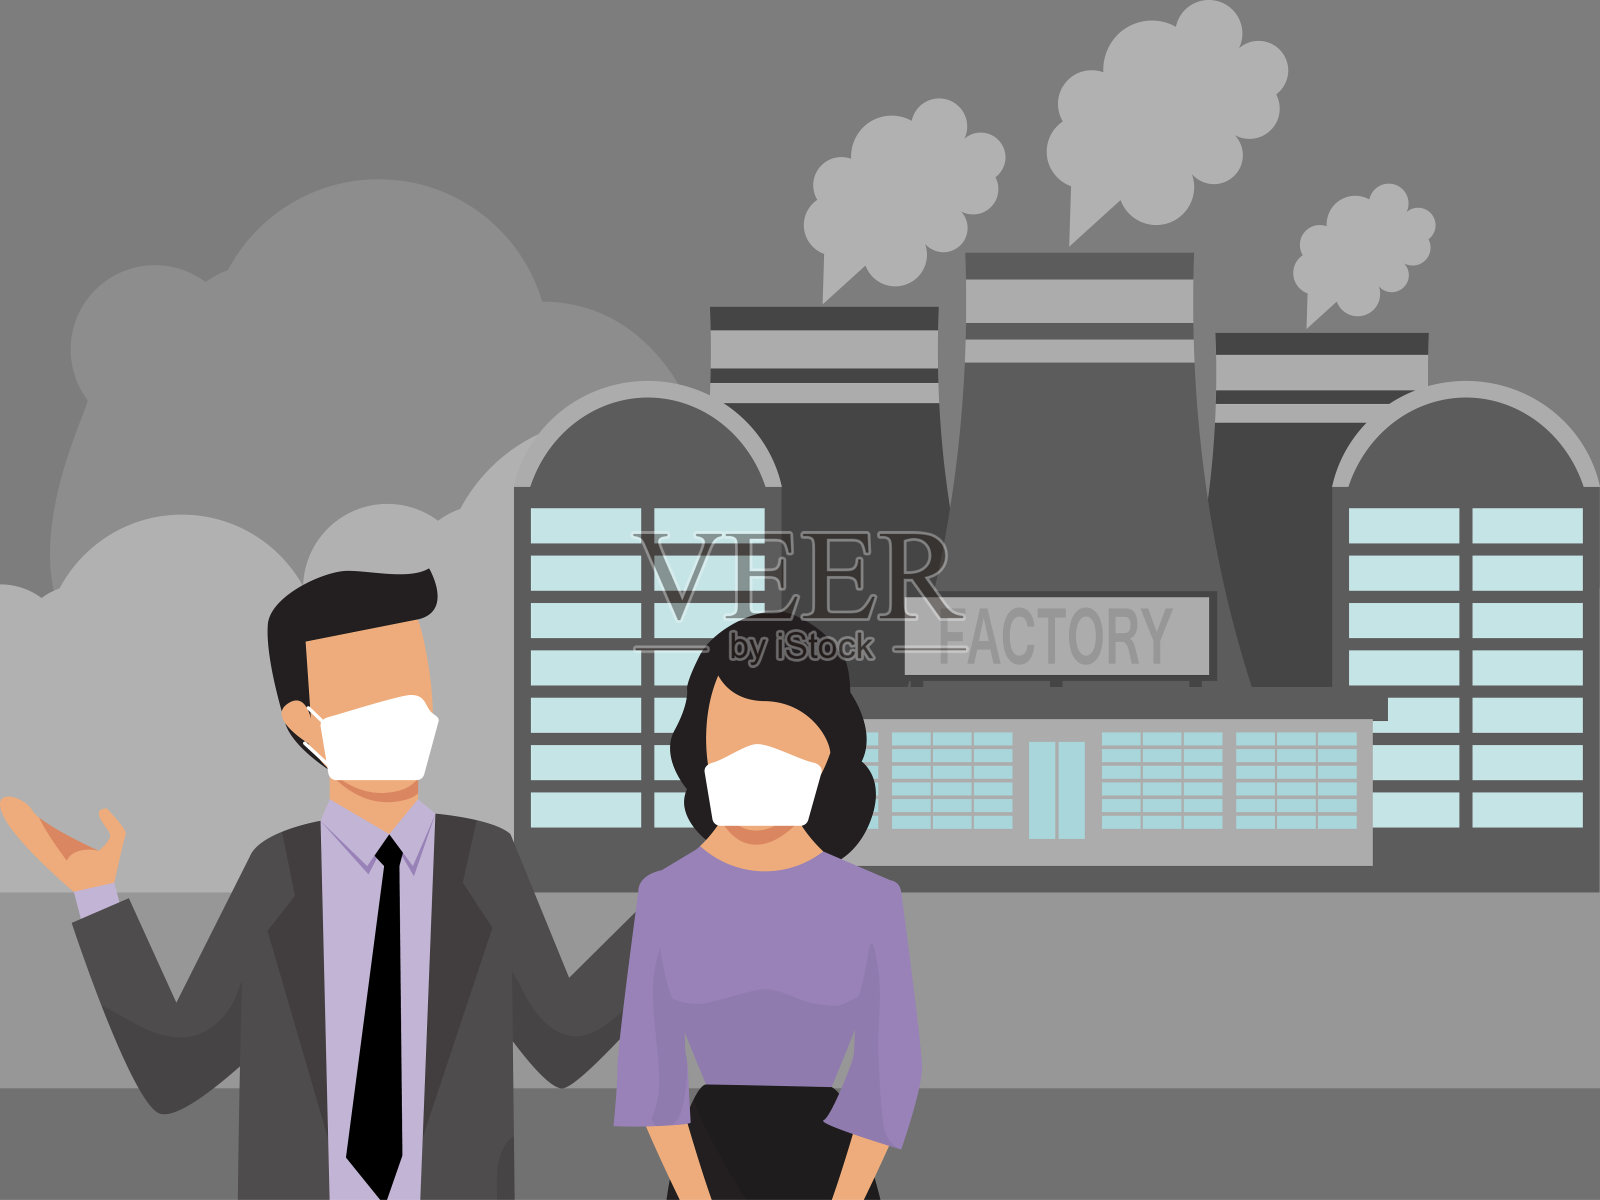 戴着口罩的人们在工厂烟雾污染的背景下。工业空气烟雾污染和城市居民。佩戴医用防护口罩的城市居民插画图片素材